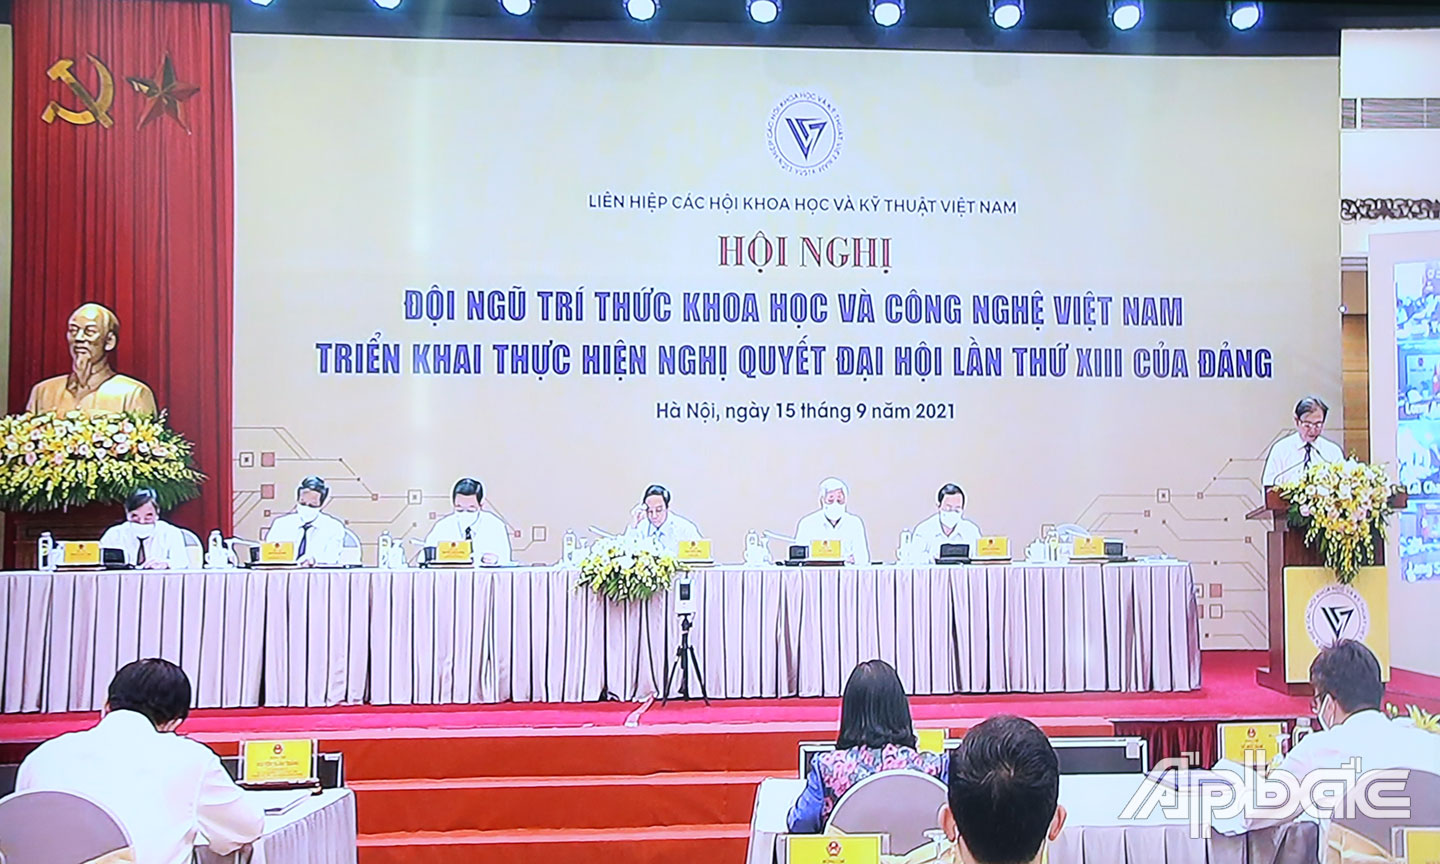 Đồng chí Phan Xuân Dũng, Bí thư Đảng đoàn, Chủ tịch Liên hiệp Hội KH&KT Việt Nam phát biểu khai mạc.